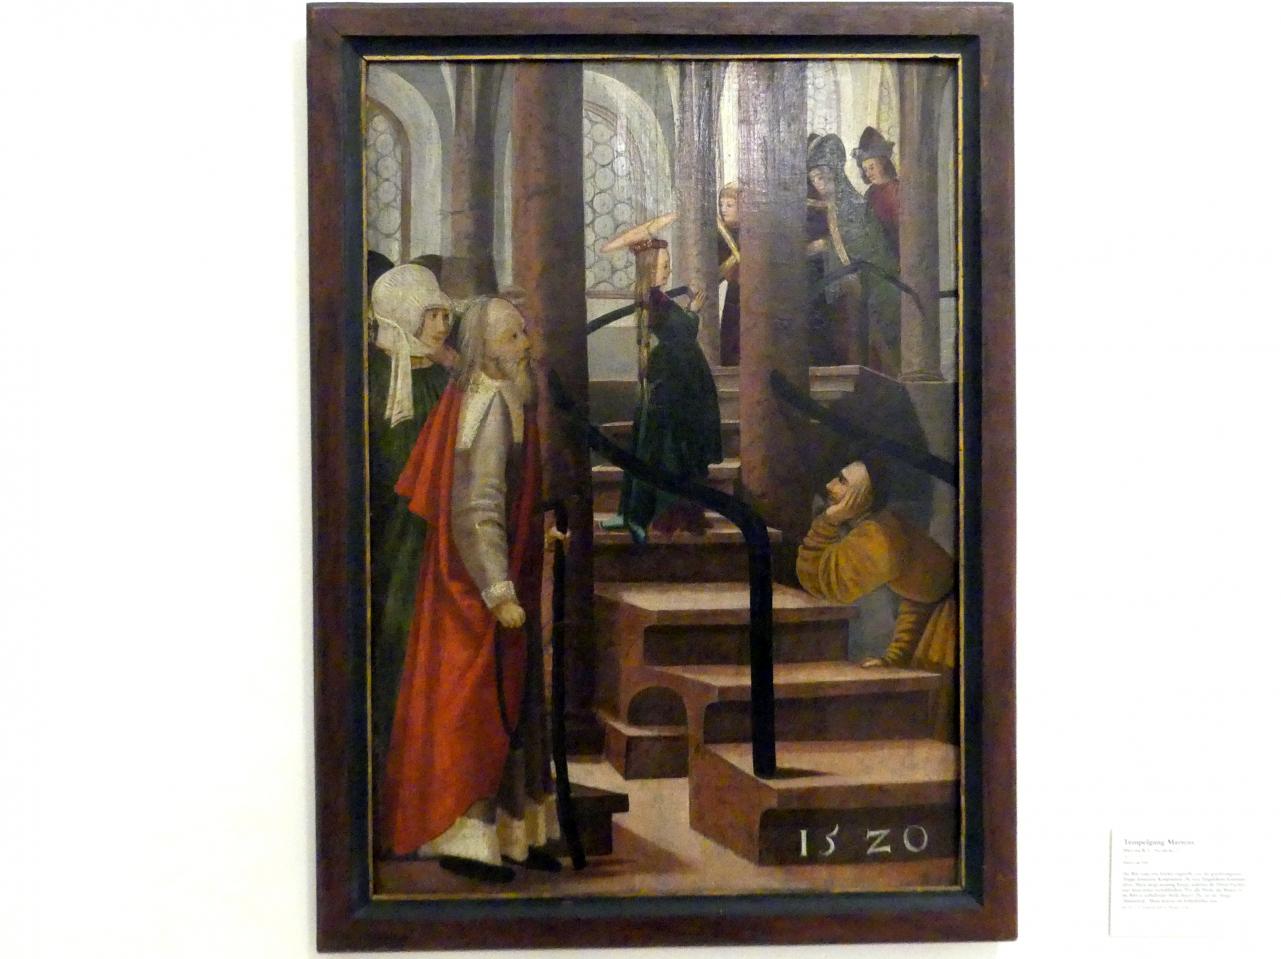 Meister R. L. (1520), Tempelgang Mariens, Linz, Oberösterreichisches Landesmuseum, Die Kunst der Donauschule, 1520, Bild 1/2